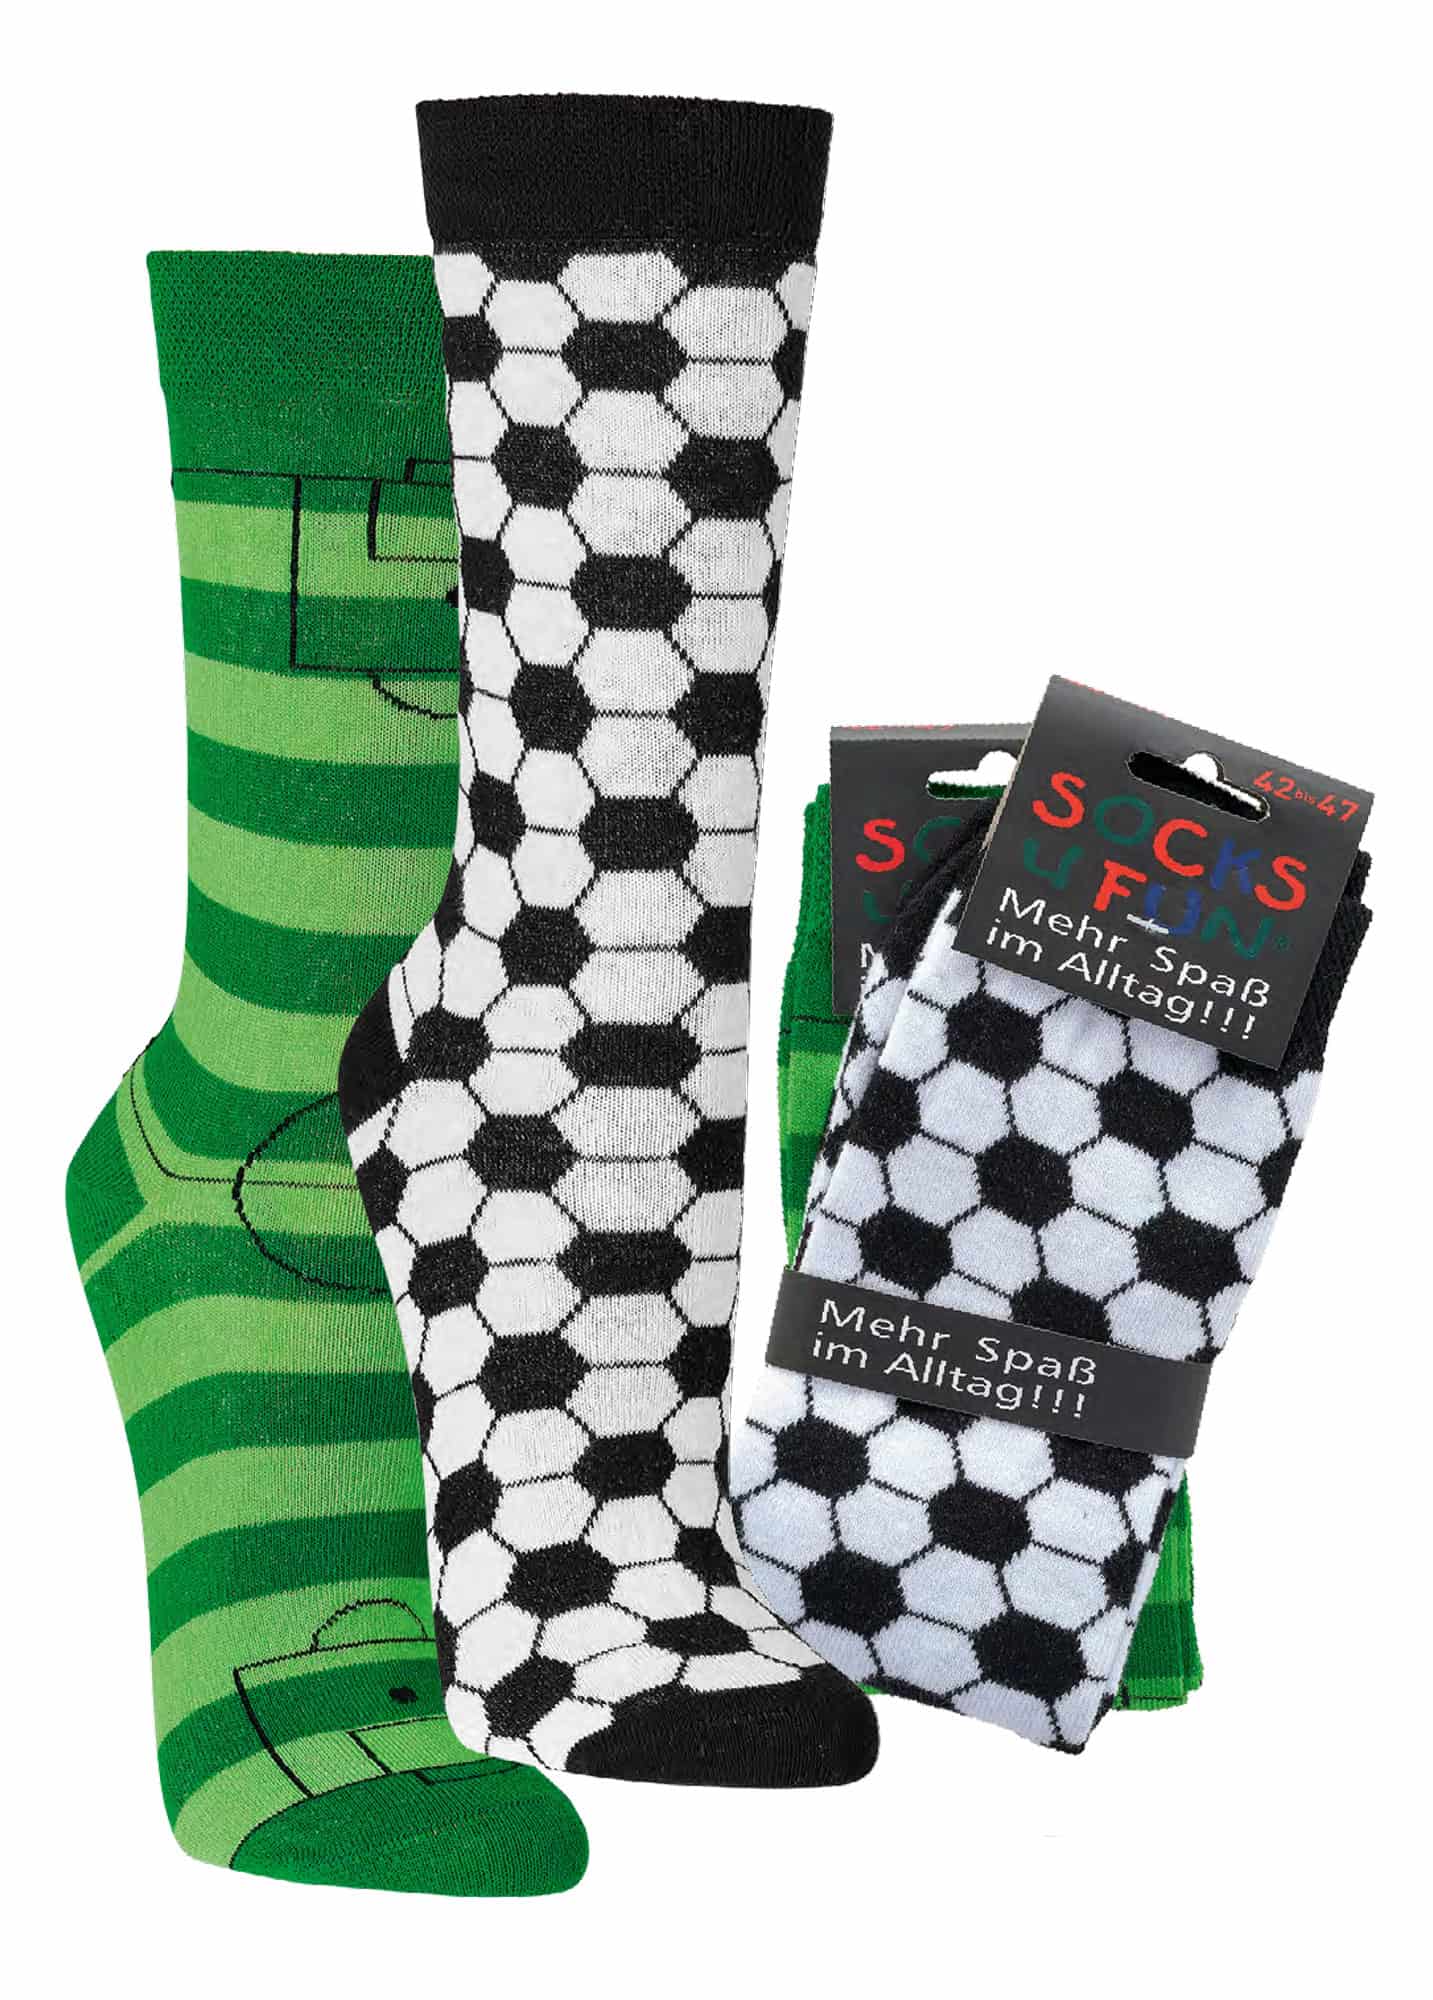 FUßBALL  witzige Socken als Geschenkidee oder zum Selbertragen  2 Paar